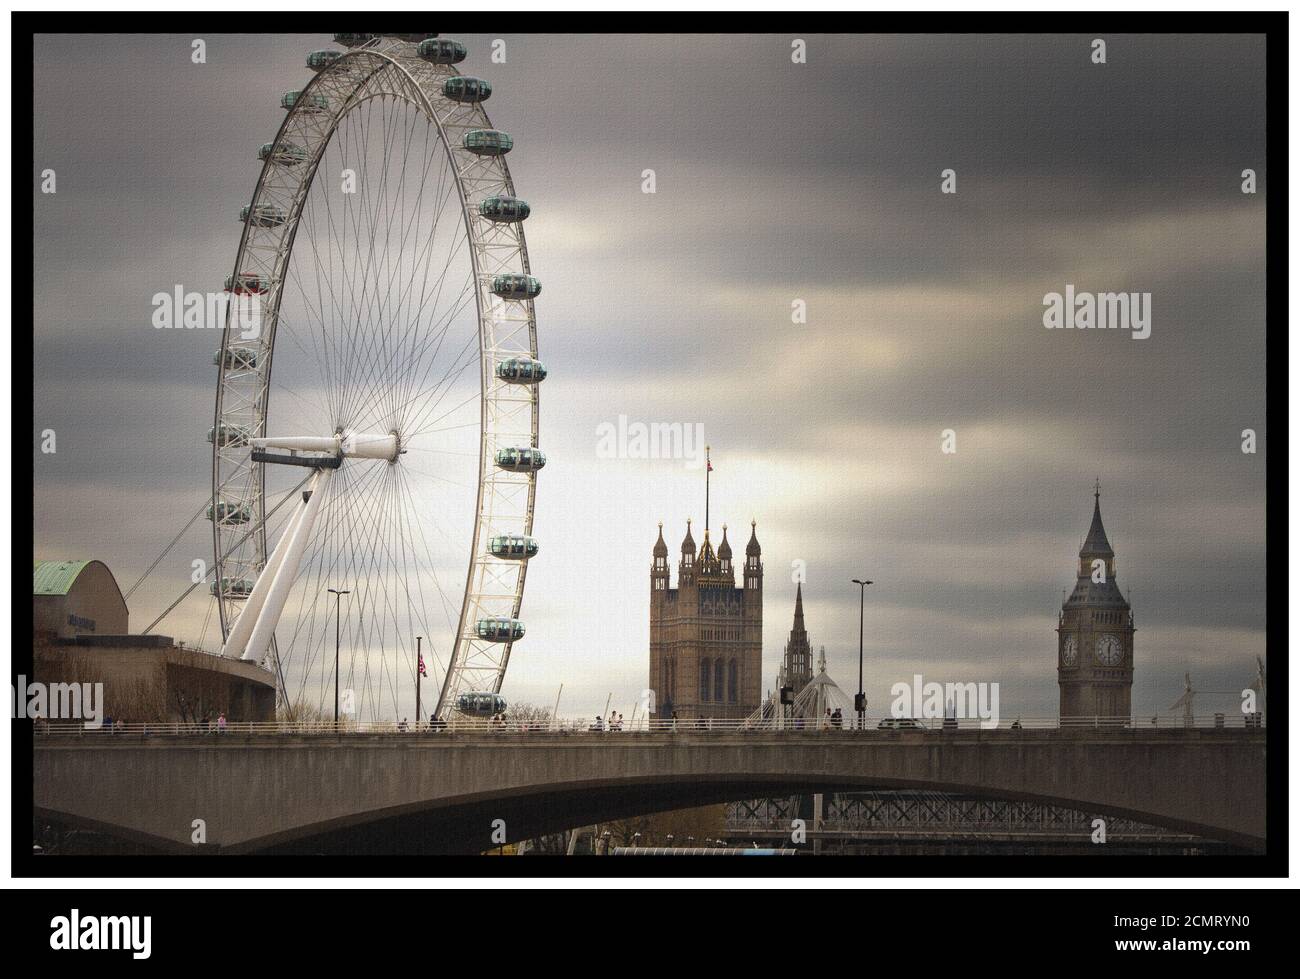 Landschaftsansicht von London Eye und Houses of Parliament gegen Ein dunkler Himmel Stockfoto